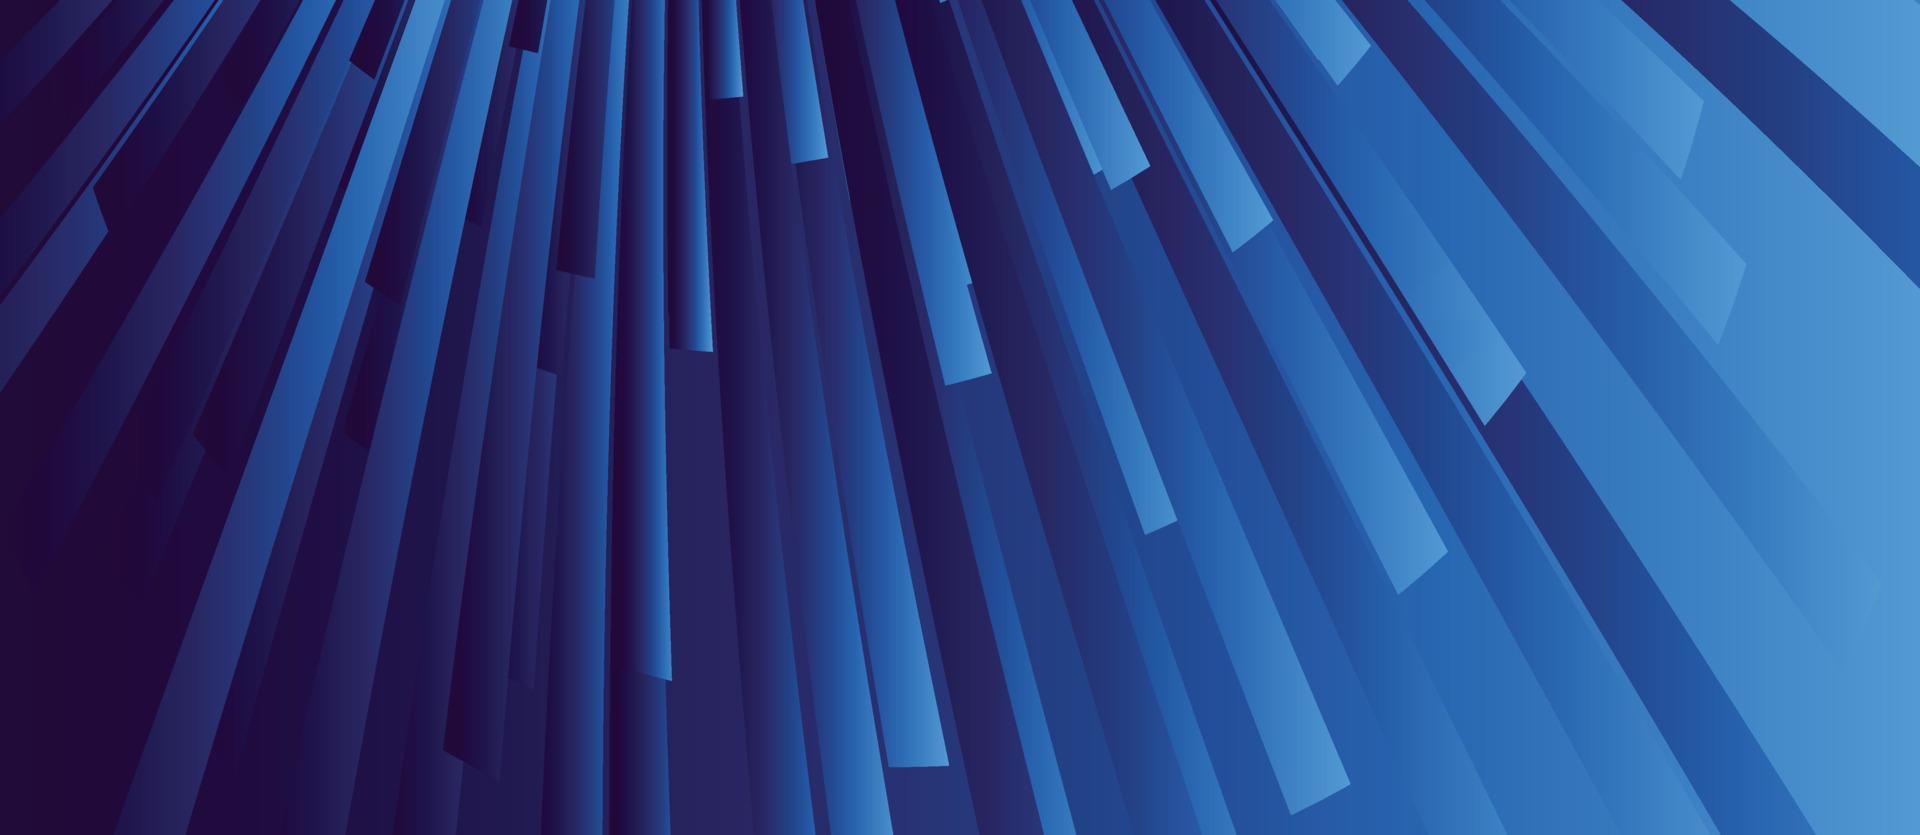 capas azules una encima de la otra, plantilla de diseño moderno para su negocio, ilustración vectorial con rayas y líneas oblicuas vector